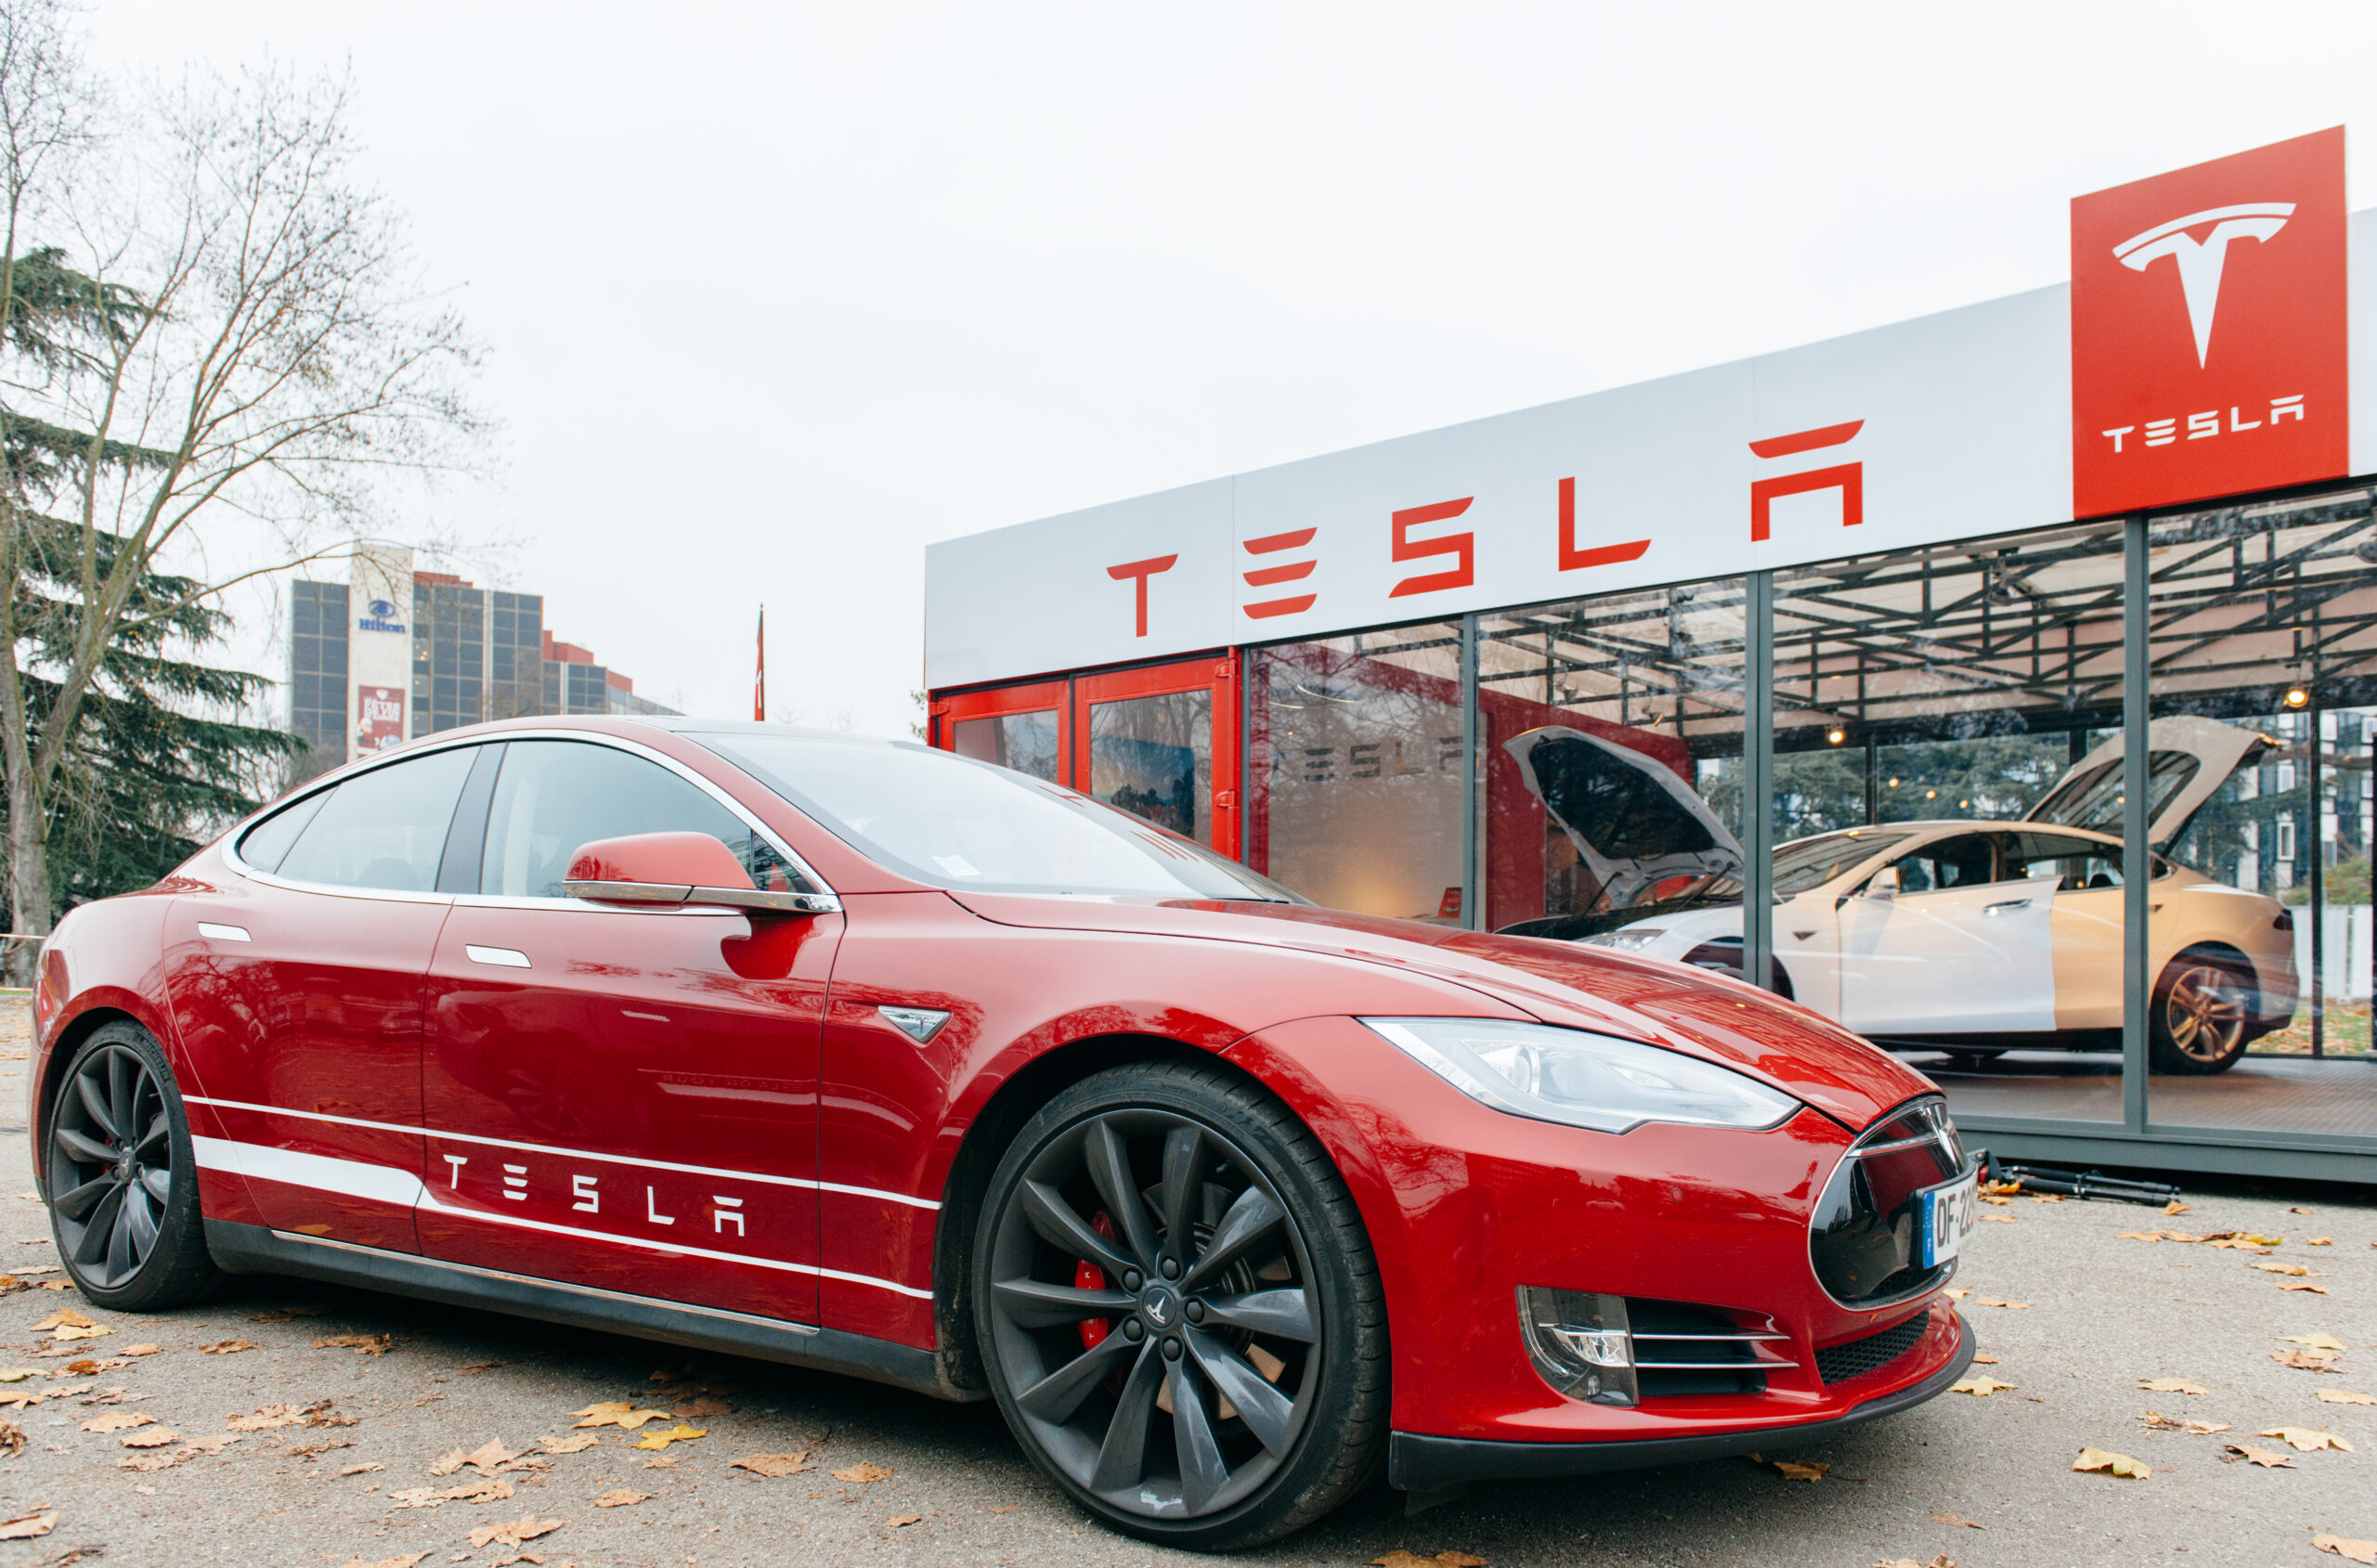 Samochód elektryczny, elektryk tesla na tle salonu Tesla z wyraźnie widocznym logotypem firmy.